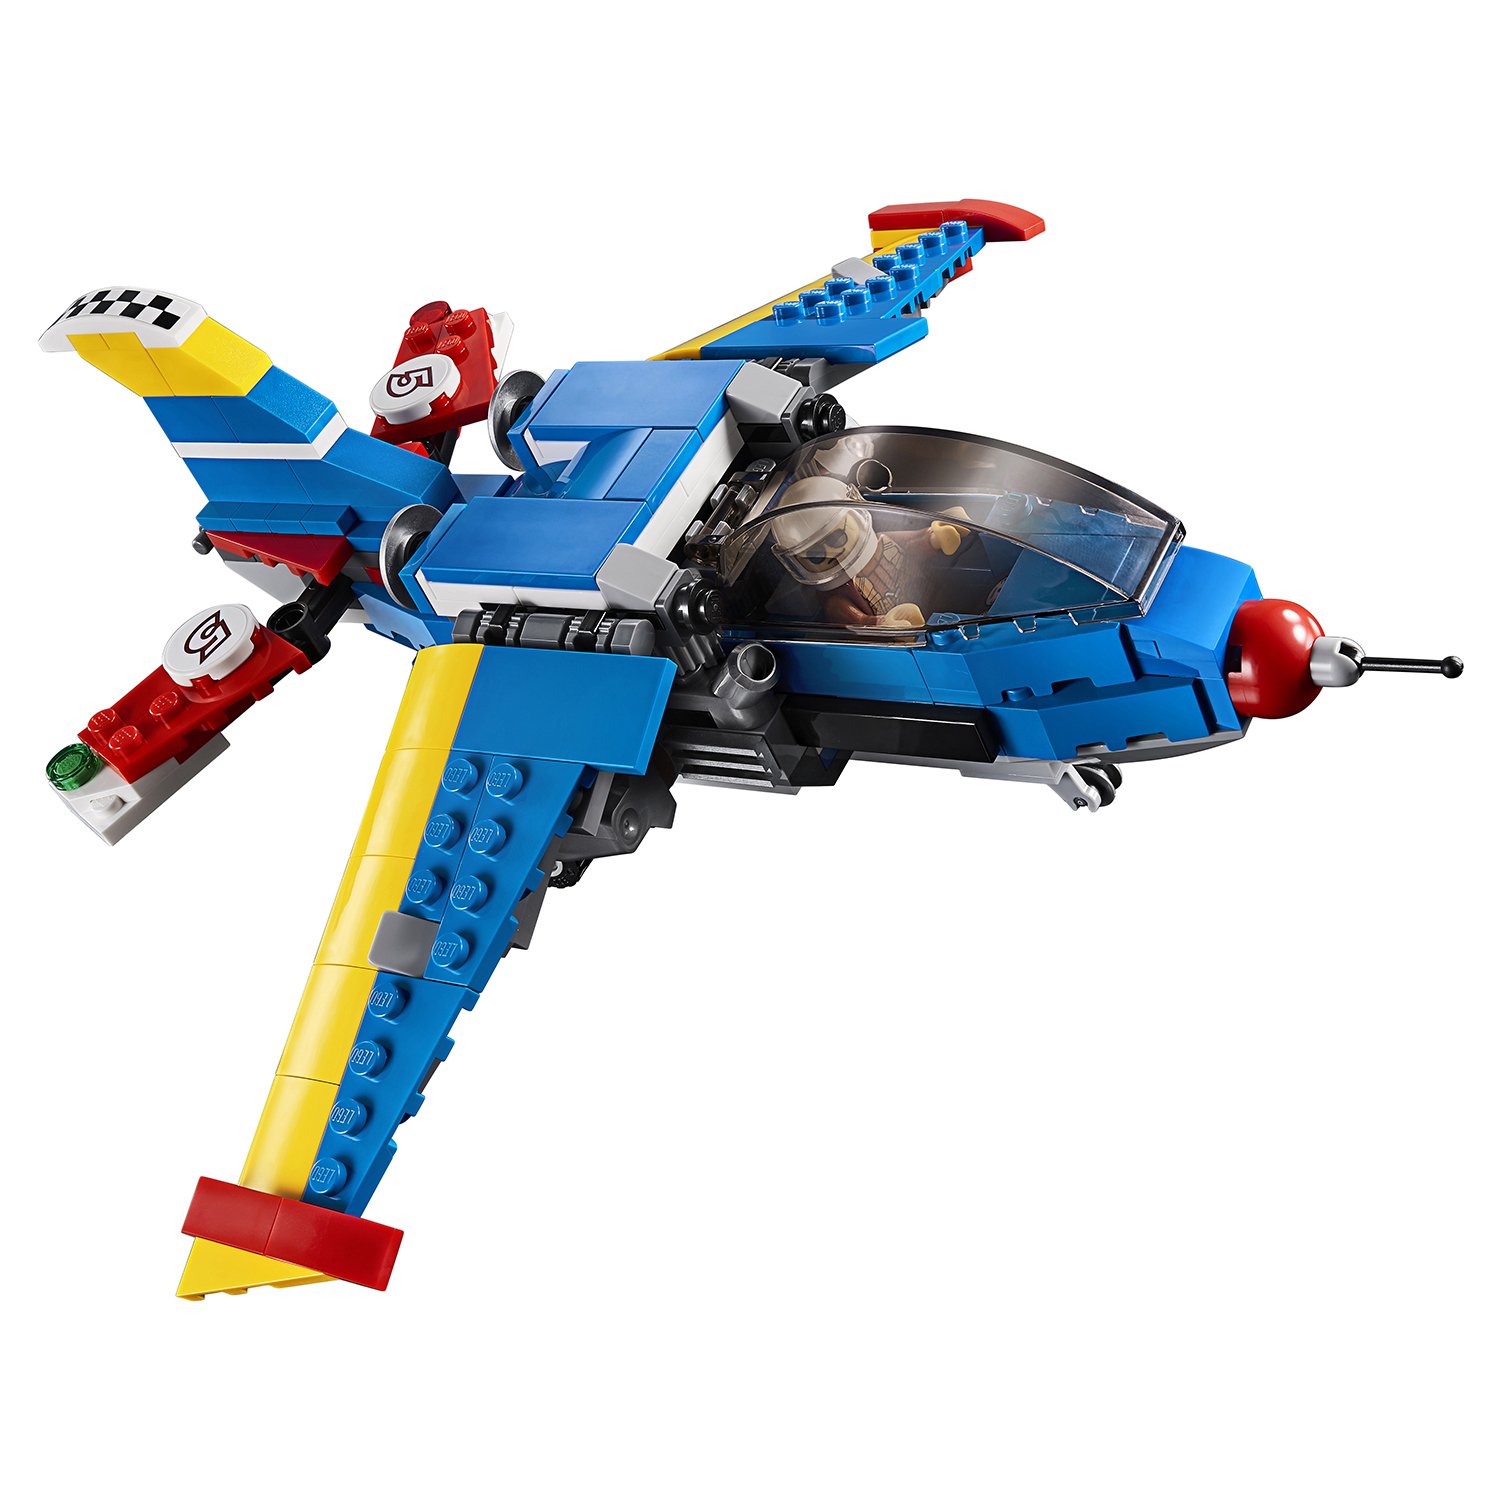 Конструктор LEGO Creator 31094 Гоночный самолет